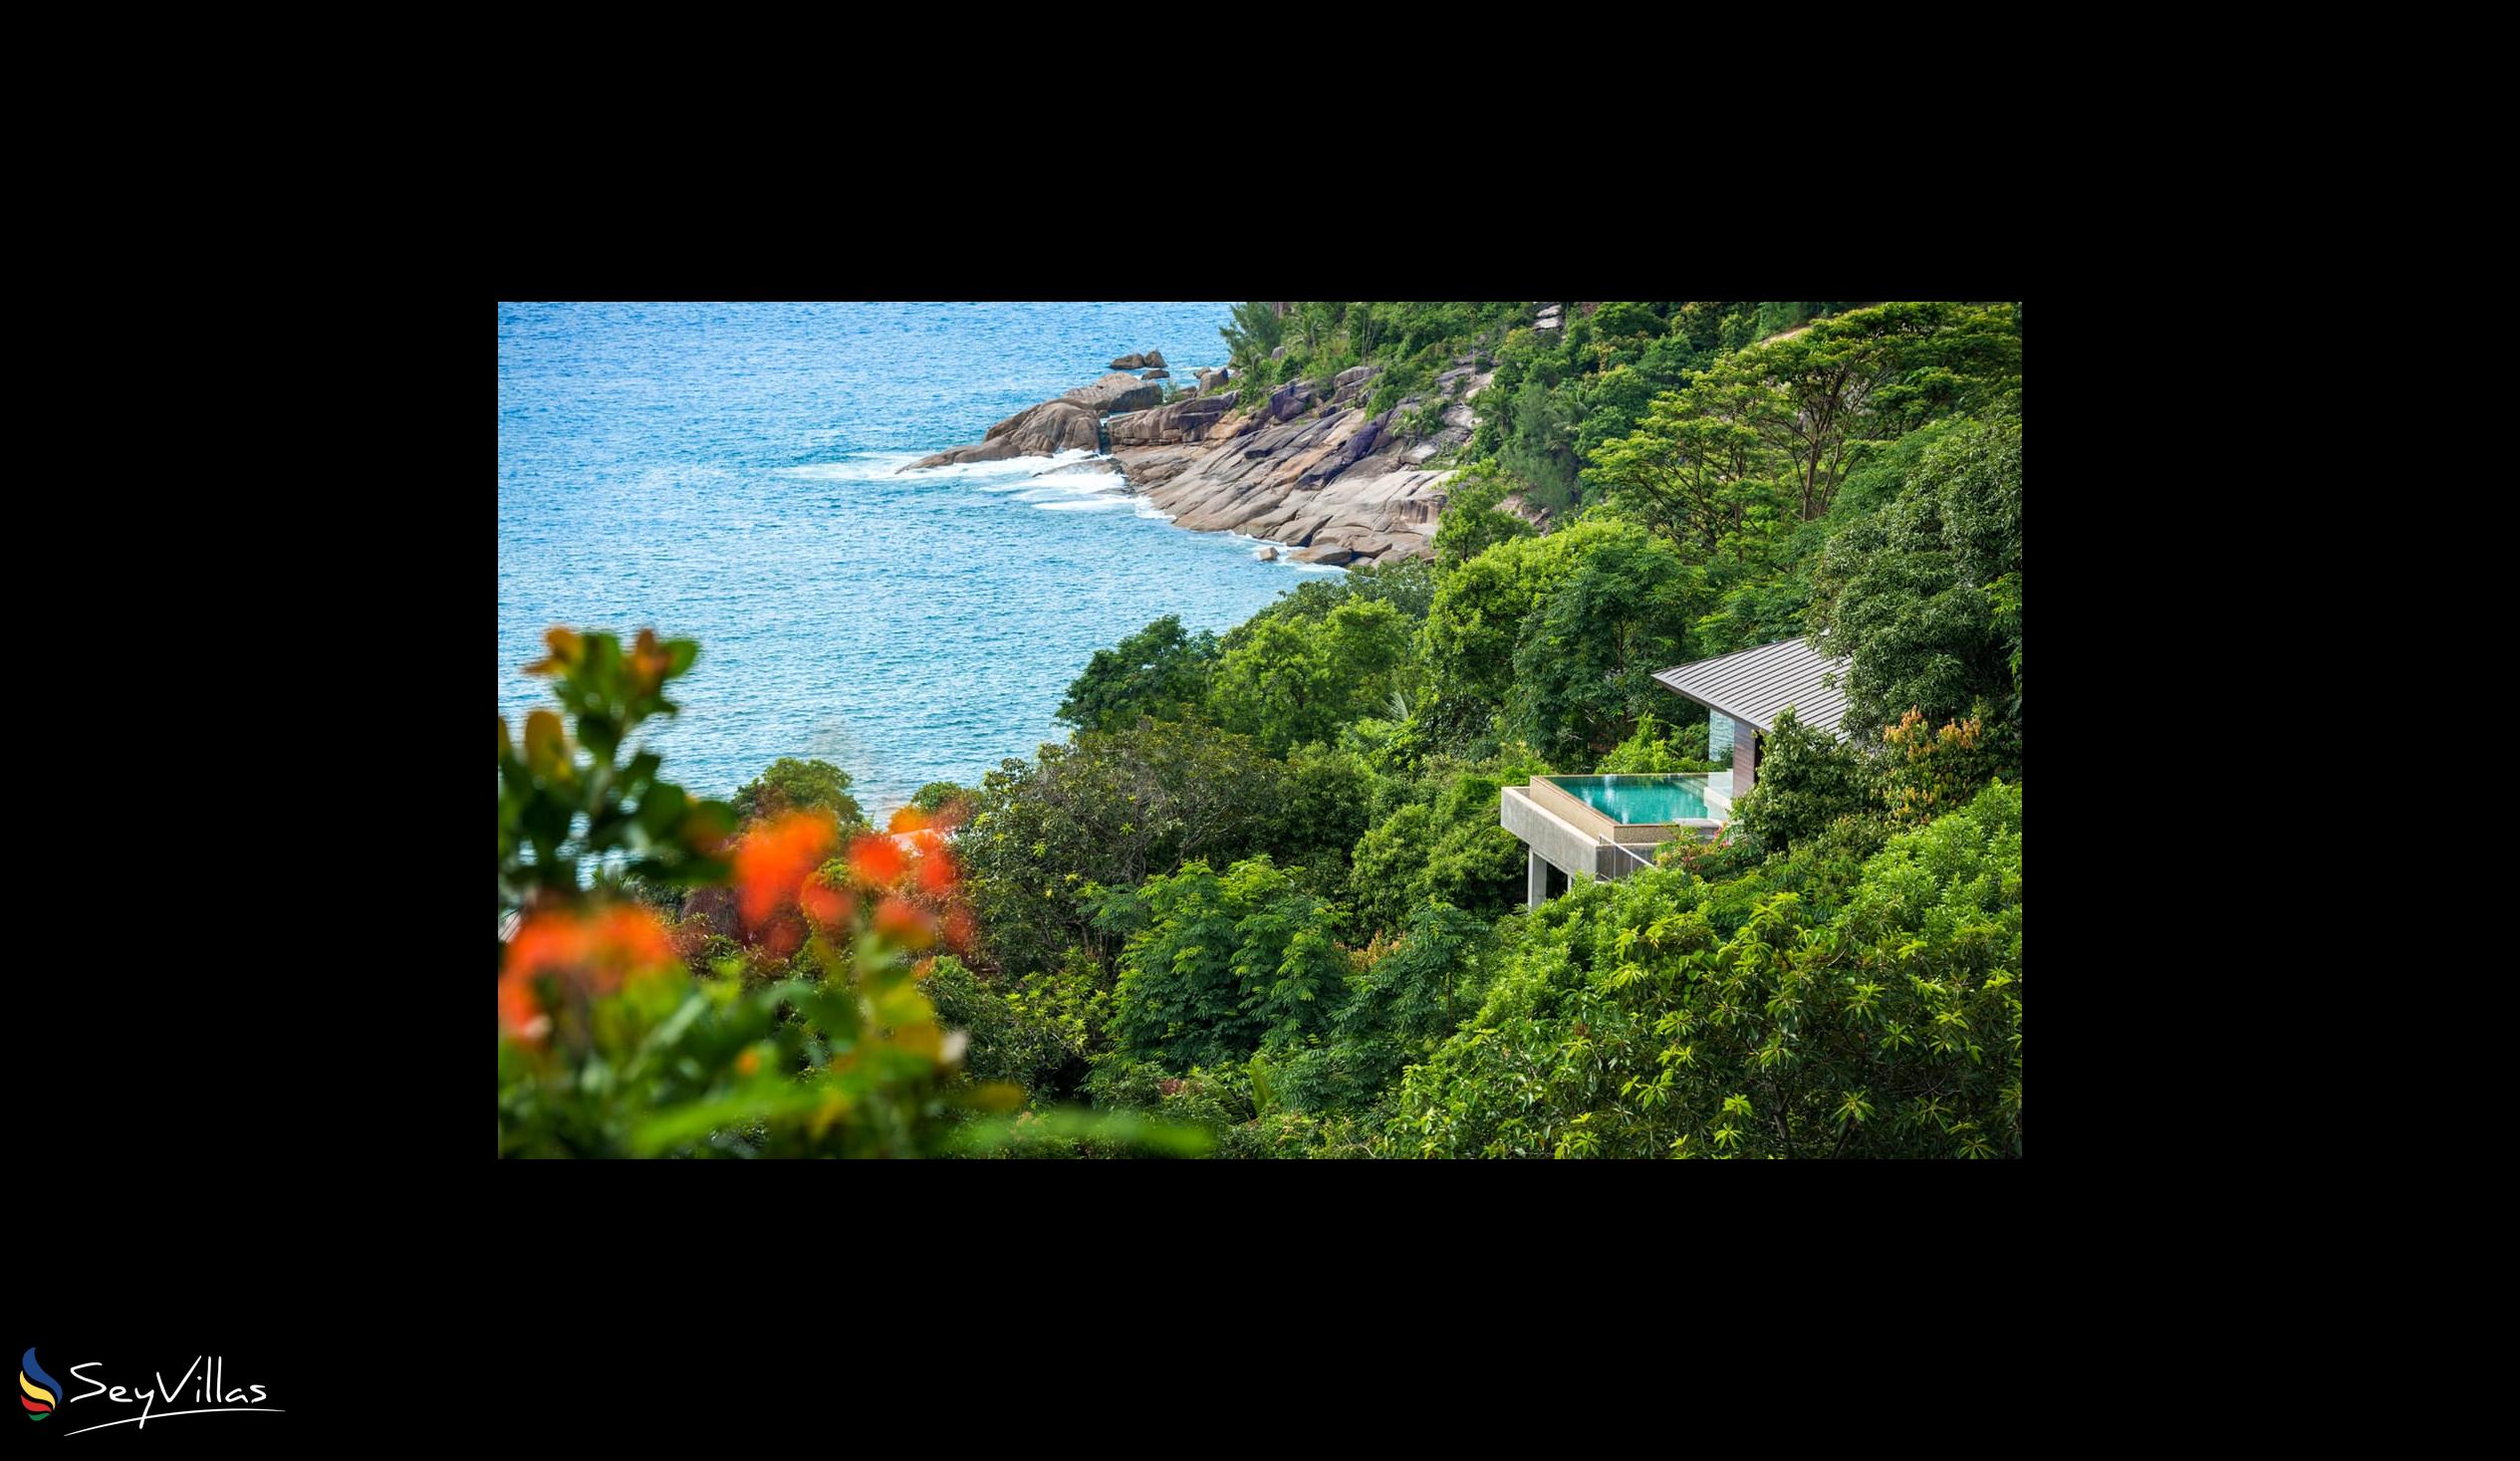 Foto 41: Four Seasons Resort - Hilltop Ocean View Villa - Mahé (Seychelles)